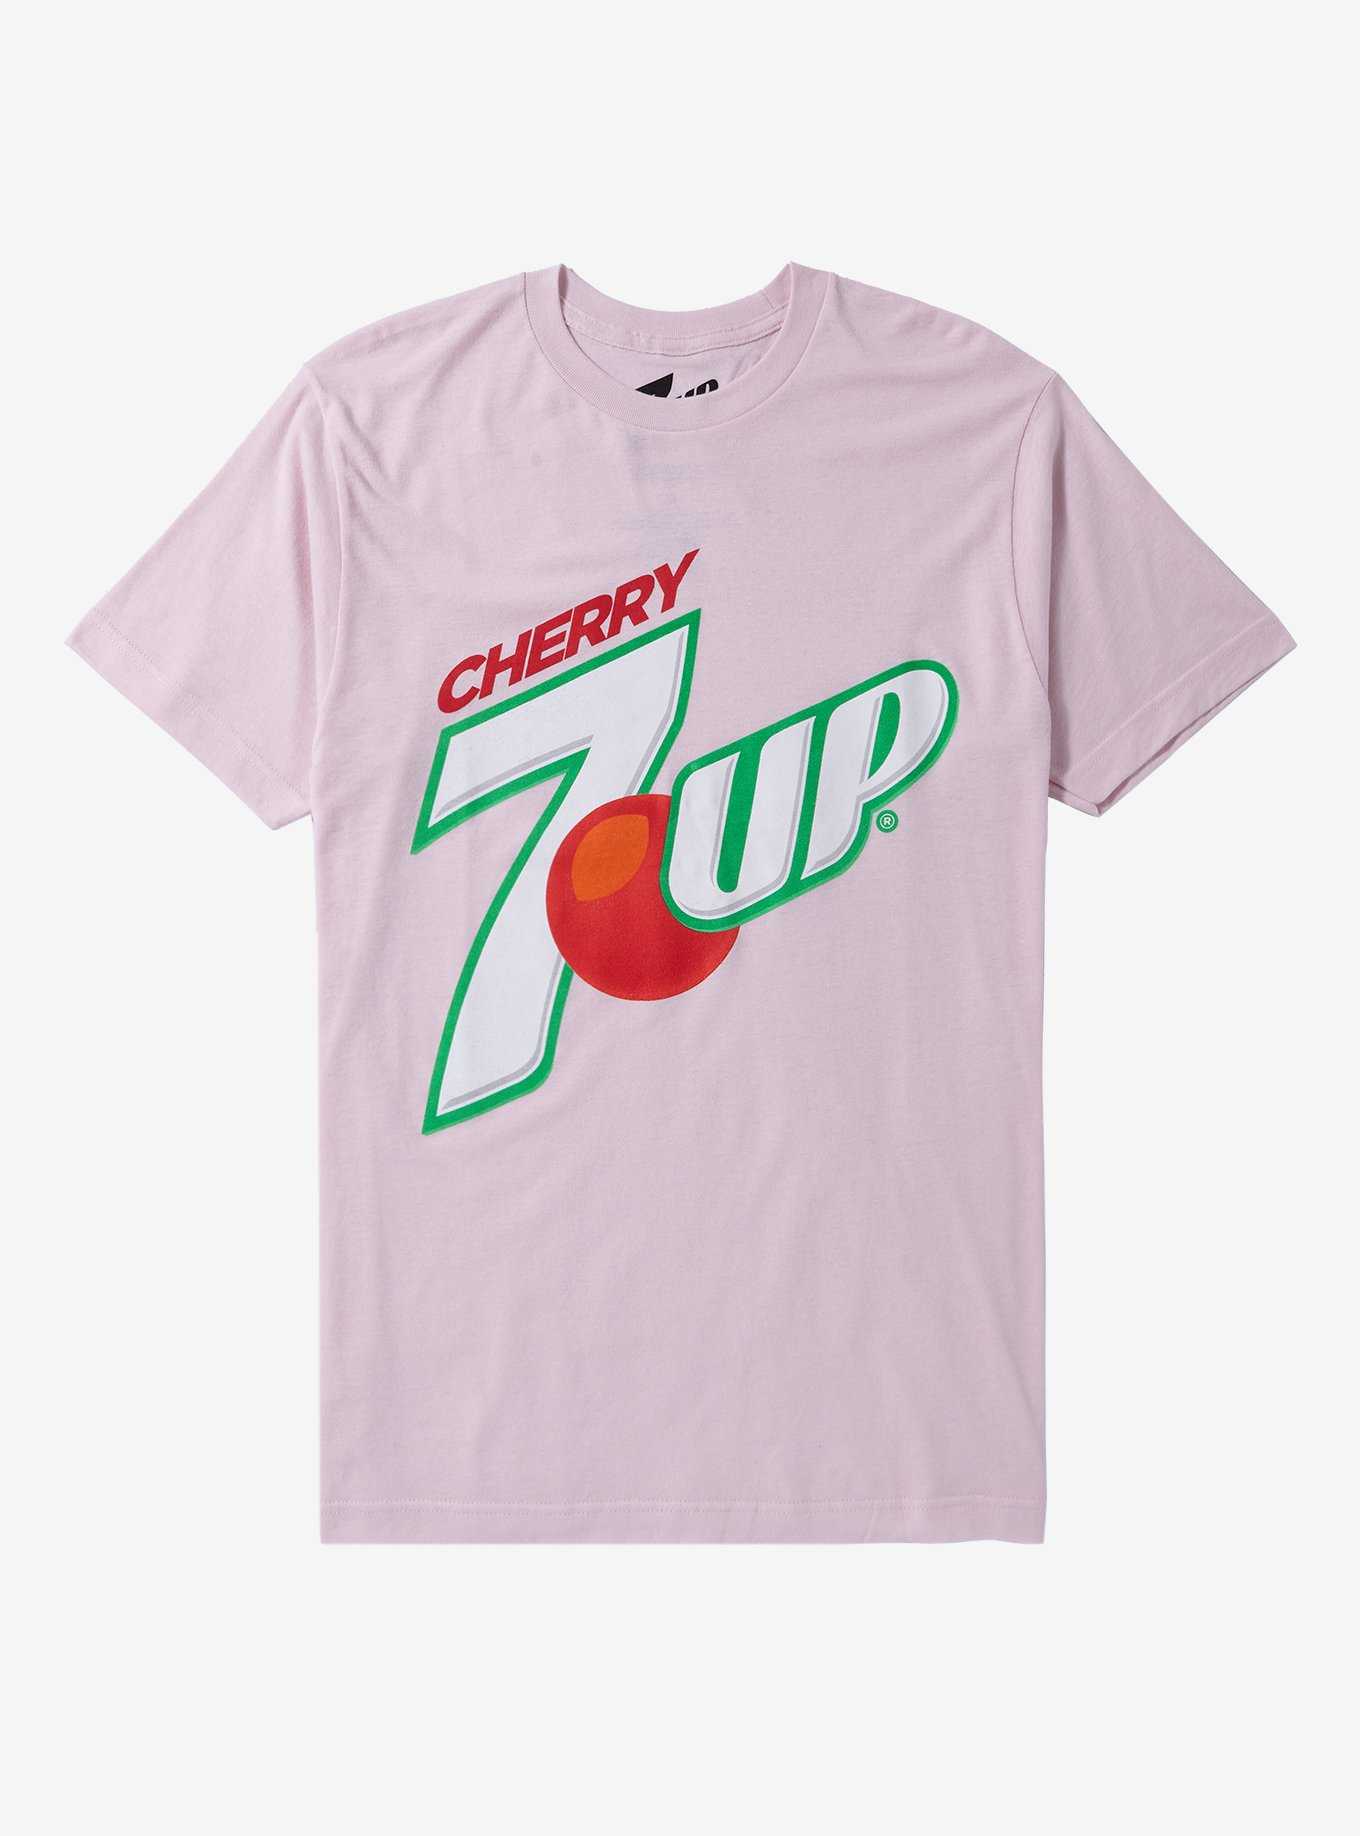 7-Up Cherry T-Shirt, , hi-res